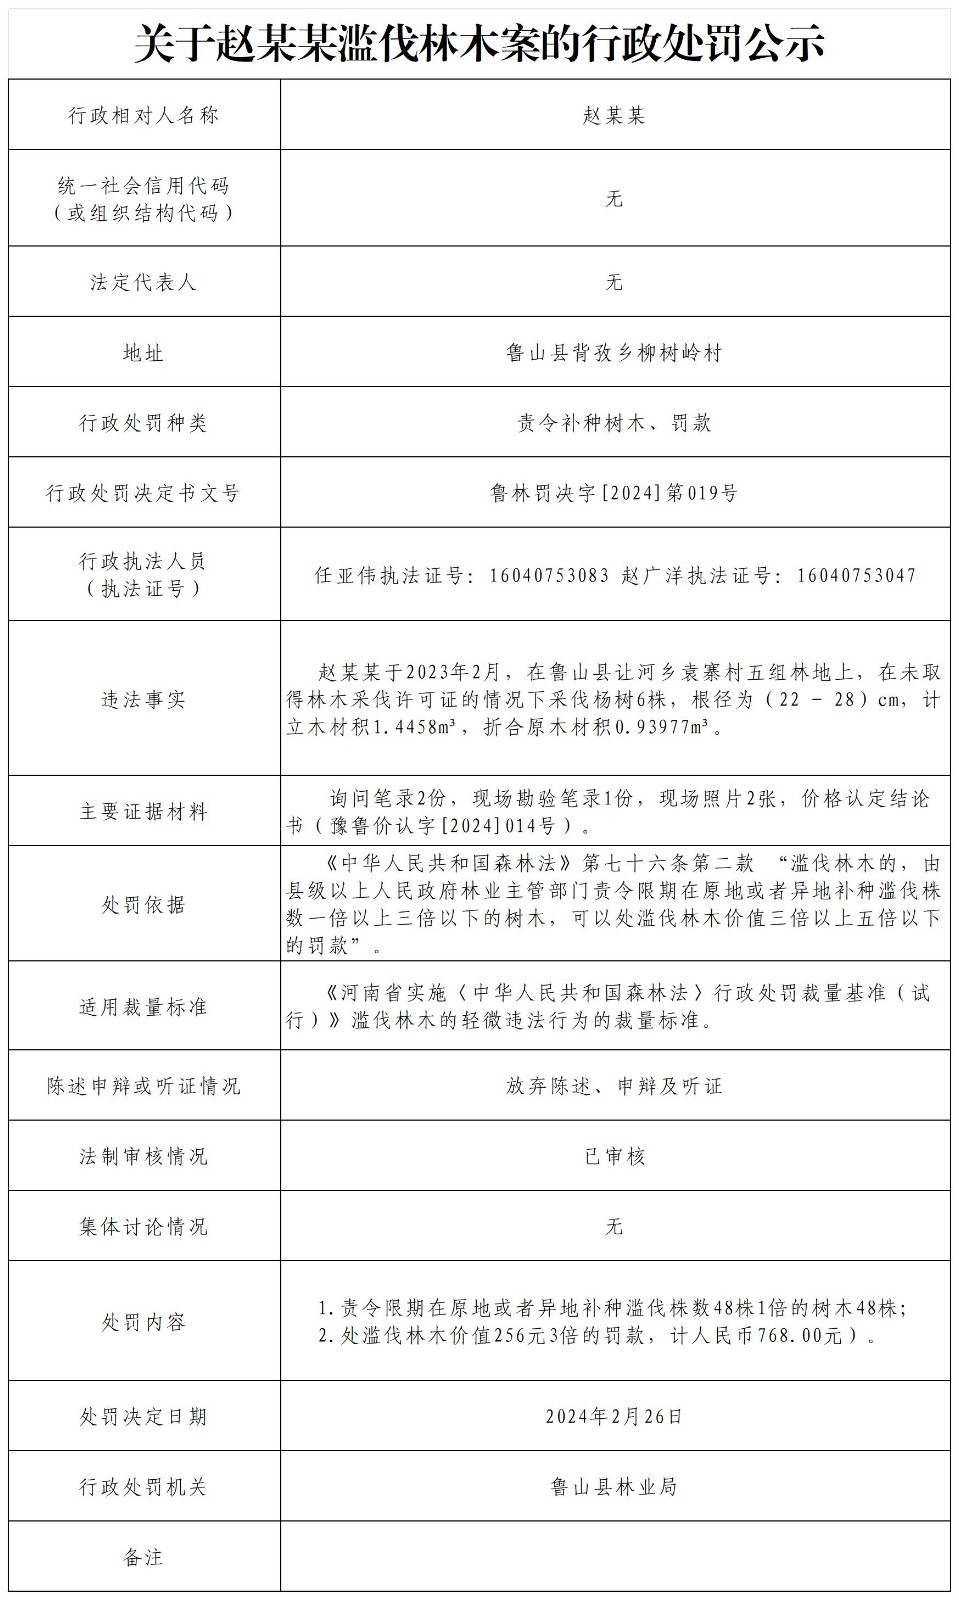 关于赵某某滥伐林木案的行政处罚公示.jpg